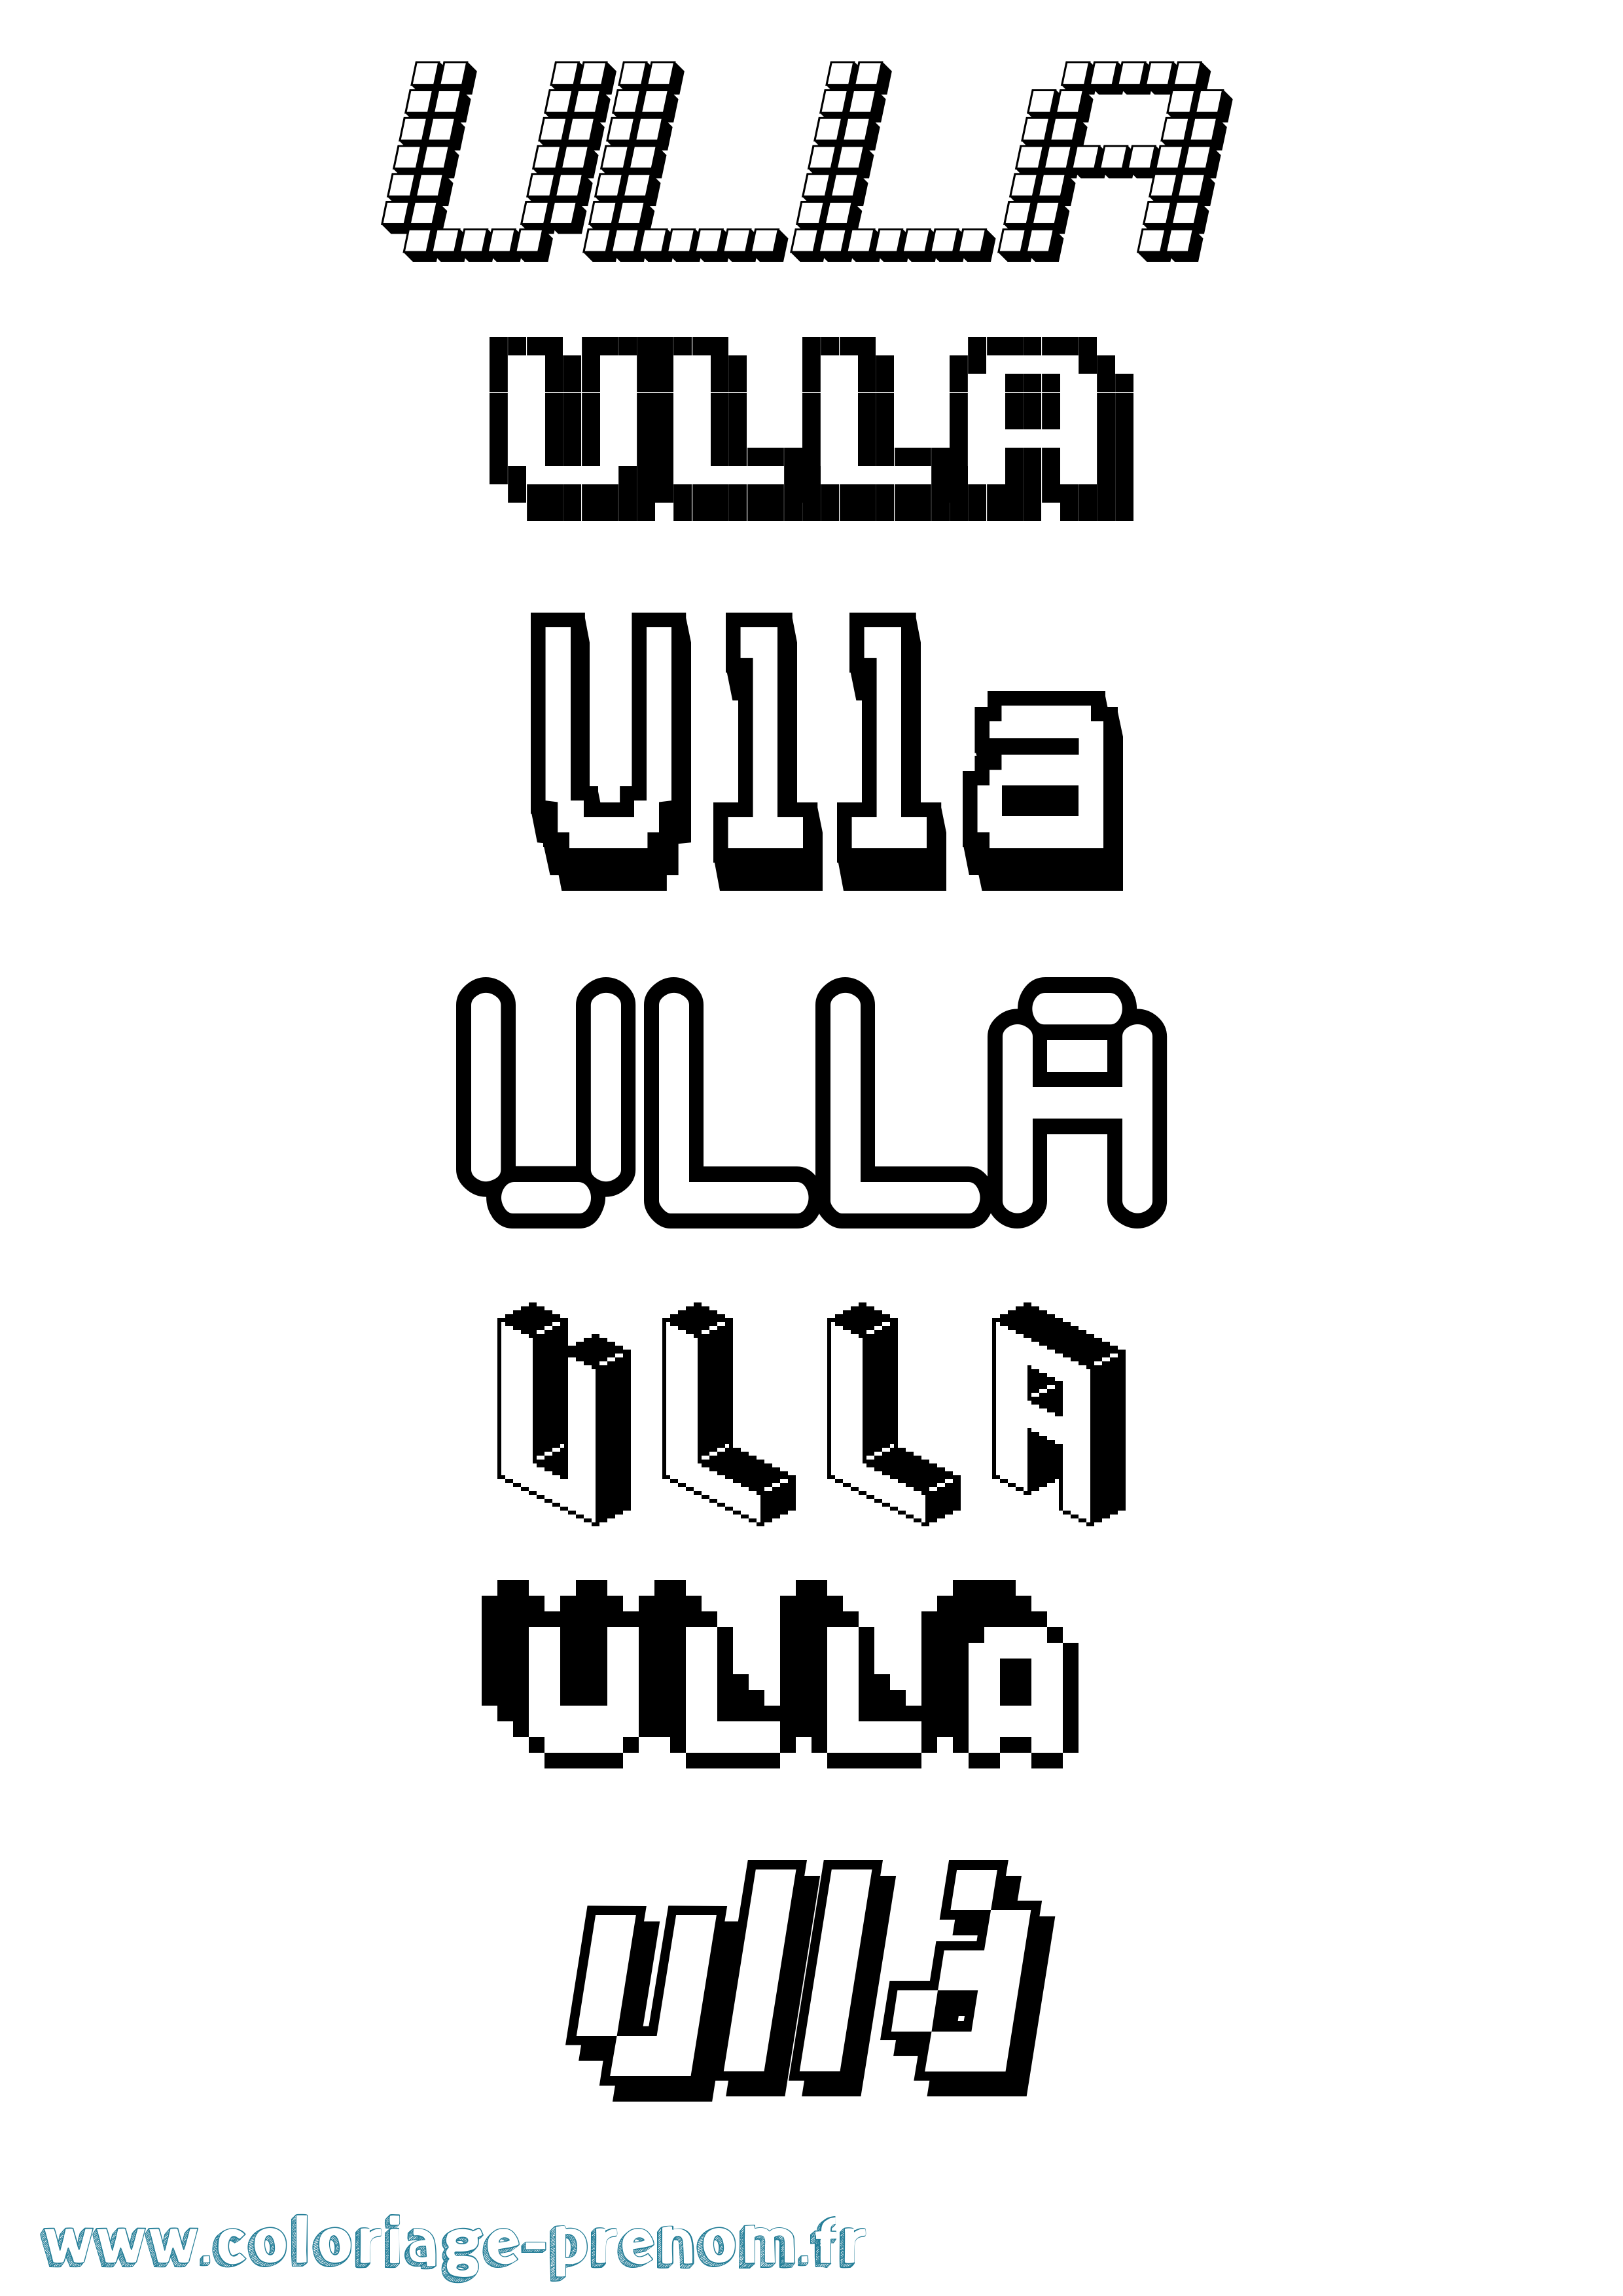 Coloriage prénom Ulla Pixel